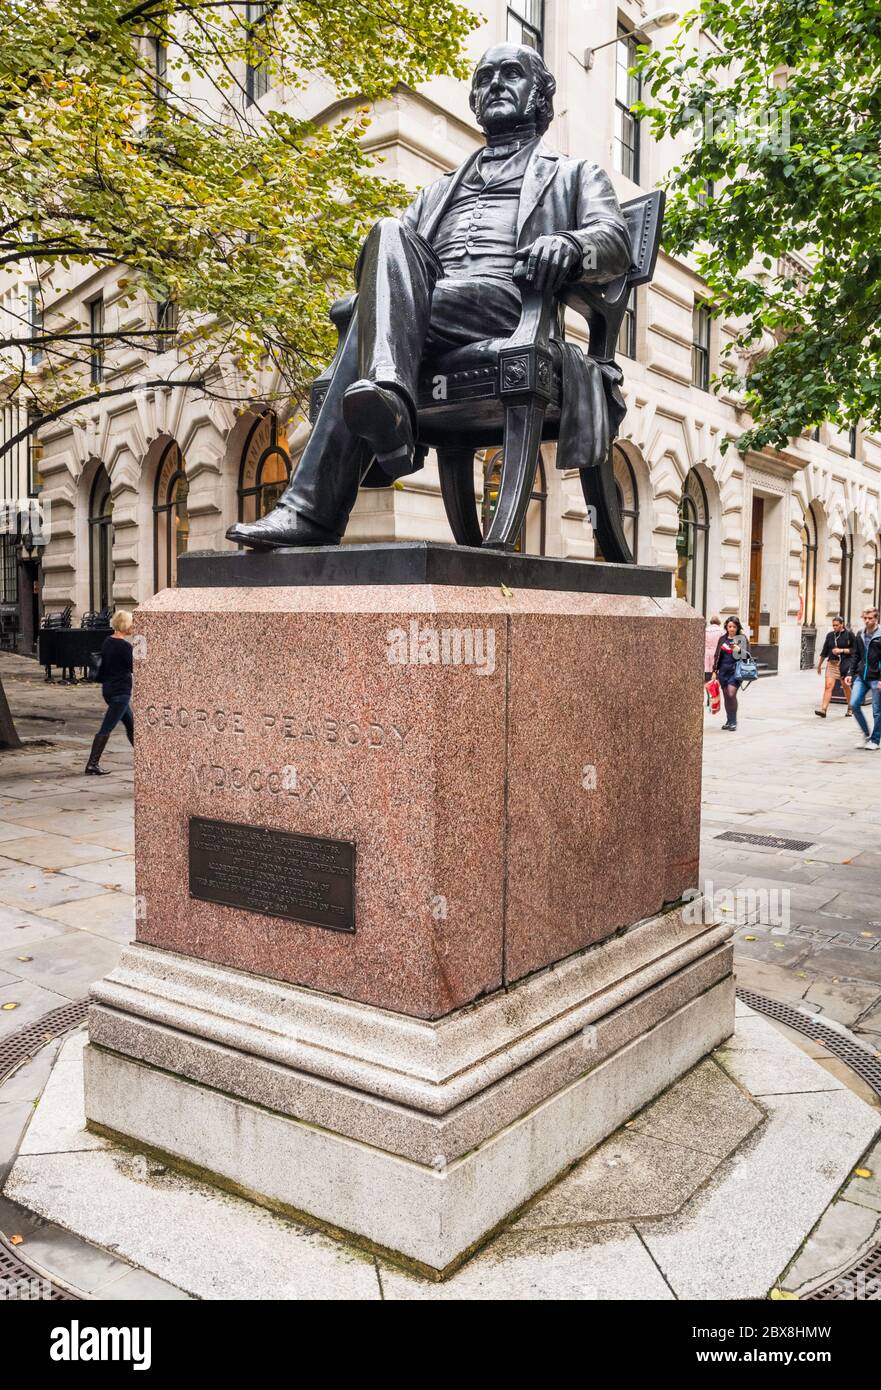 Statue des amerikanischen Financiers und Philanthropen George Peabody, von William Wetmore Story, in der Nähe der Börse Roayal, London, England, Großbritannien. Stockfoto